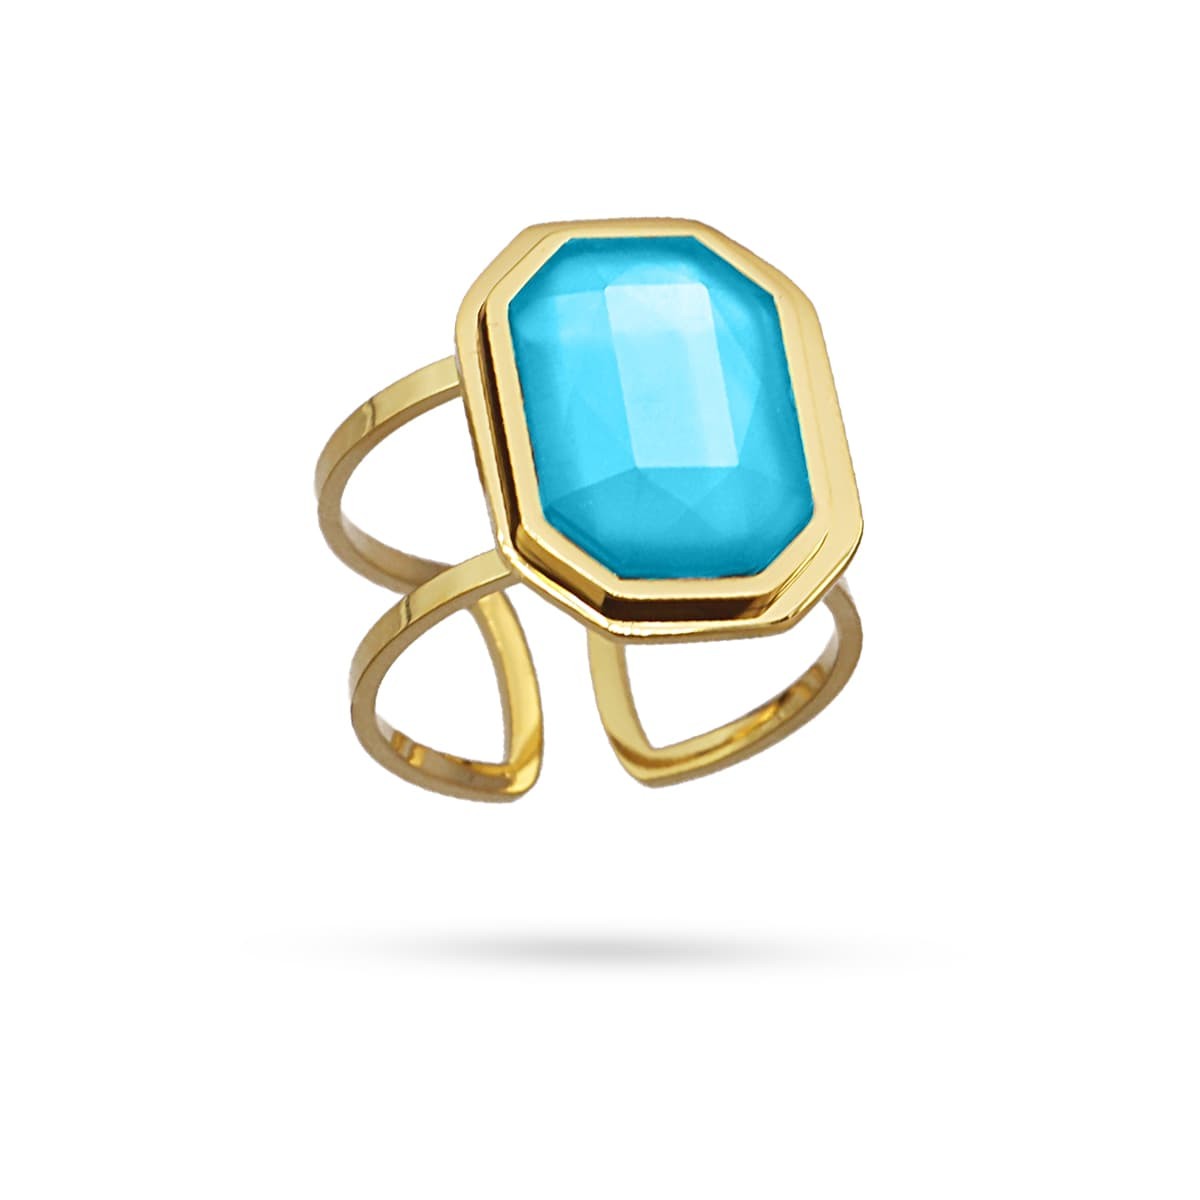 Maxi anillo dorado cadena eslabones acero quirúrgico plástico reciclado piedra coloreada azul